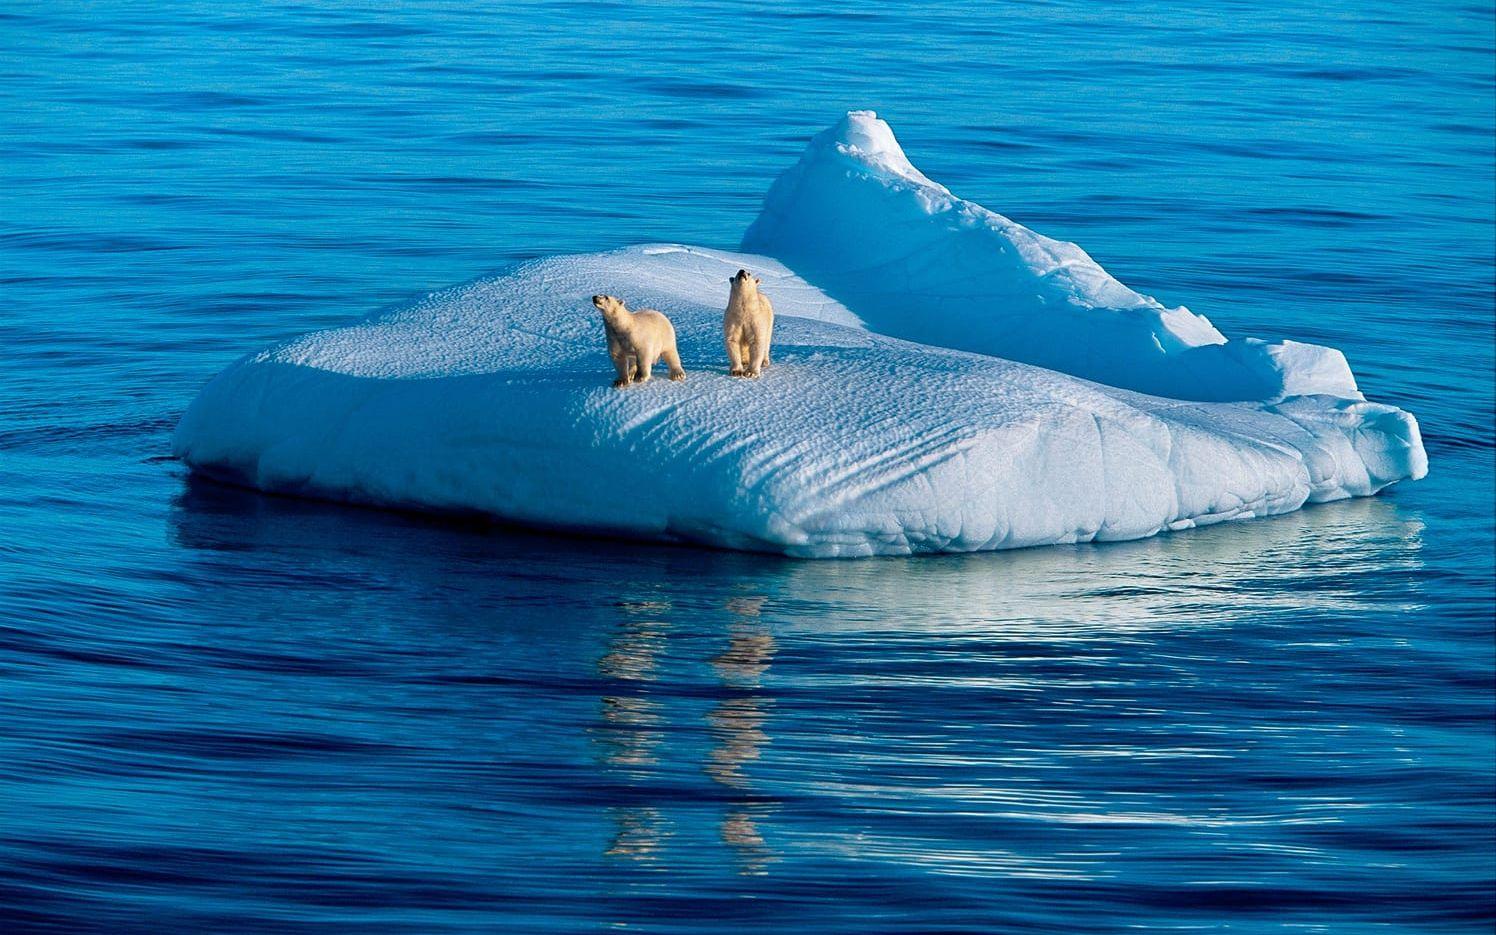 Priset syftar till att uppmärksamma innovationer som kan stoppa klimatförändringarna. Bild: Paul Nicklen - National Geograhic/WWF